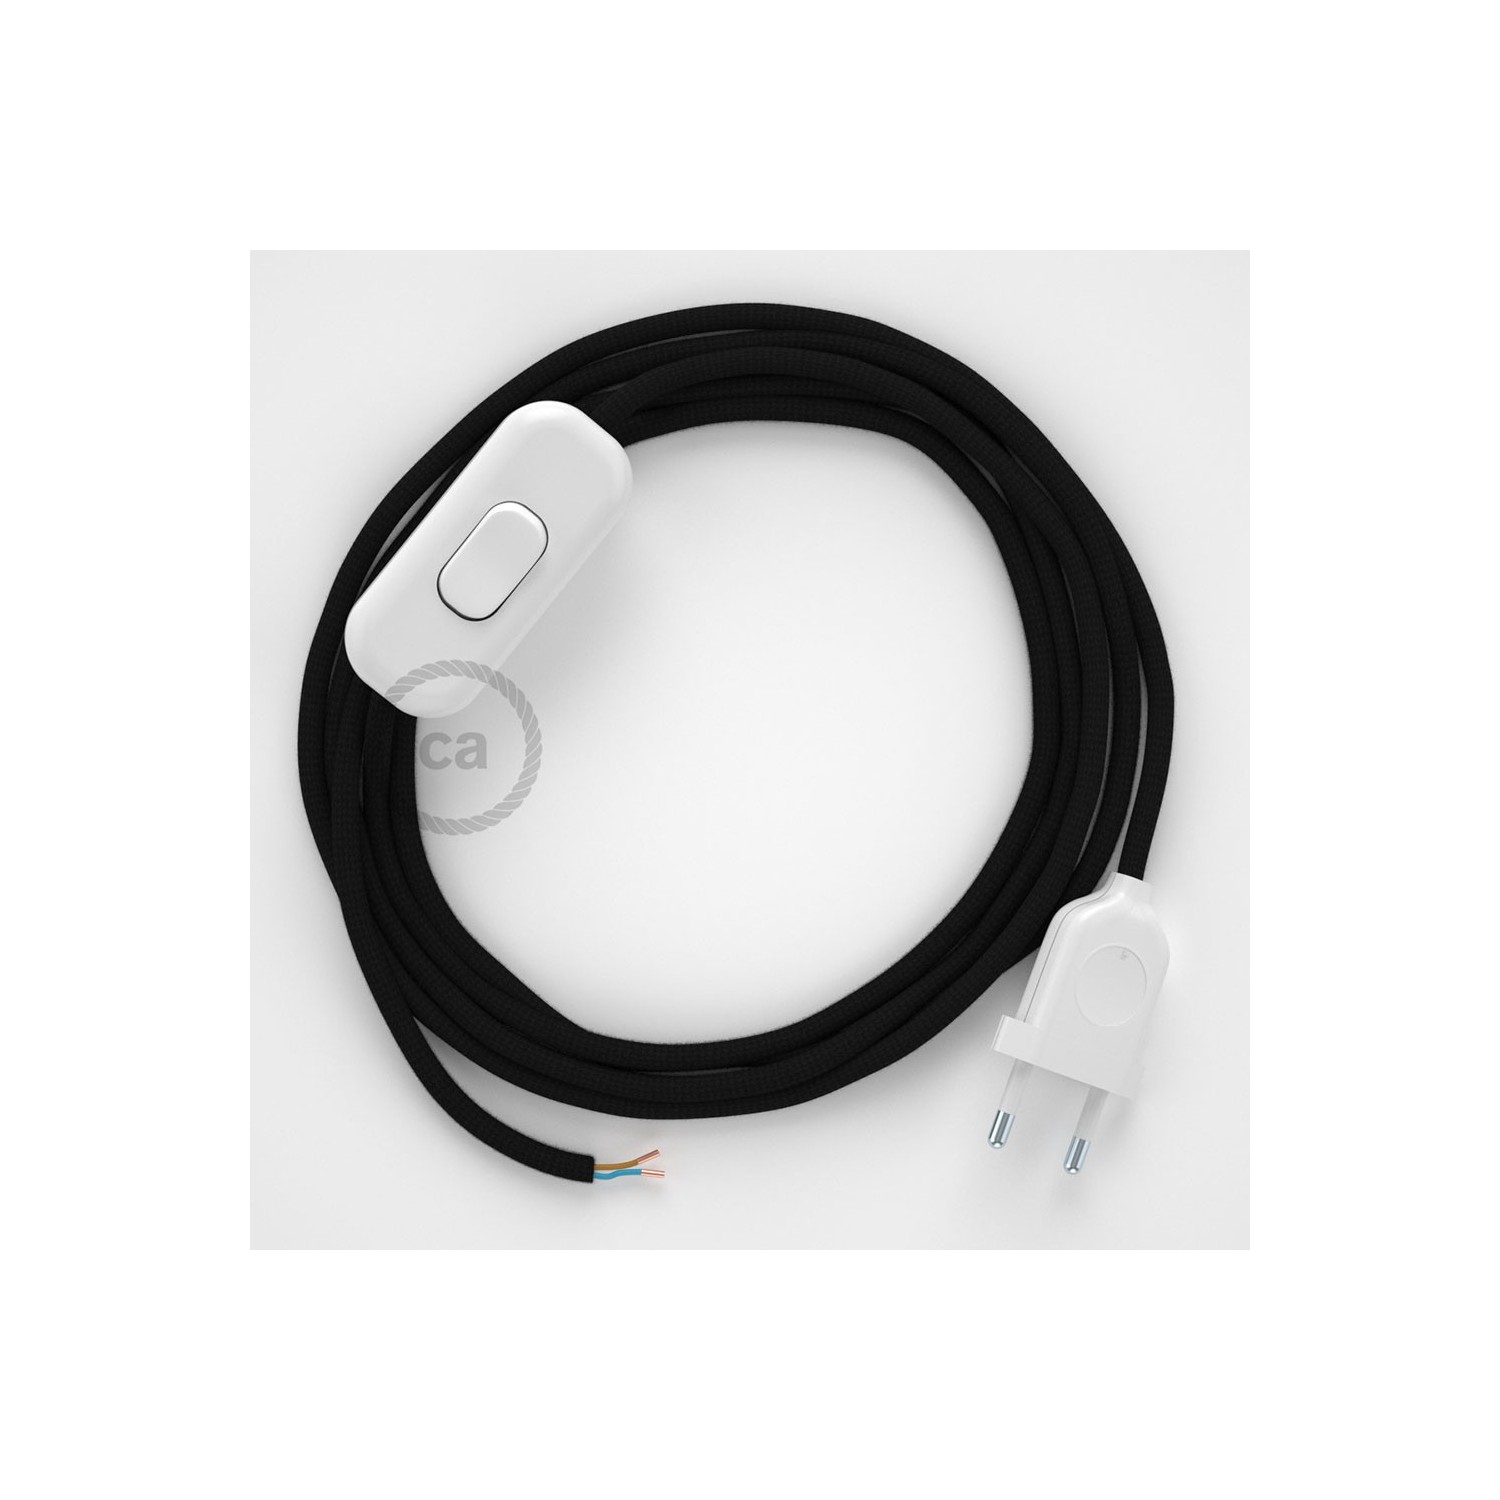 Cableado para lámpara, cable RM04 Efecto Seda Negro 1,8m. Elige tu el color de la clavija y del interruptor!